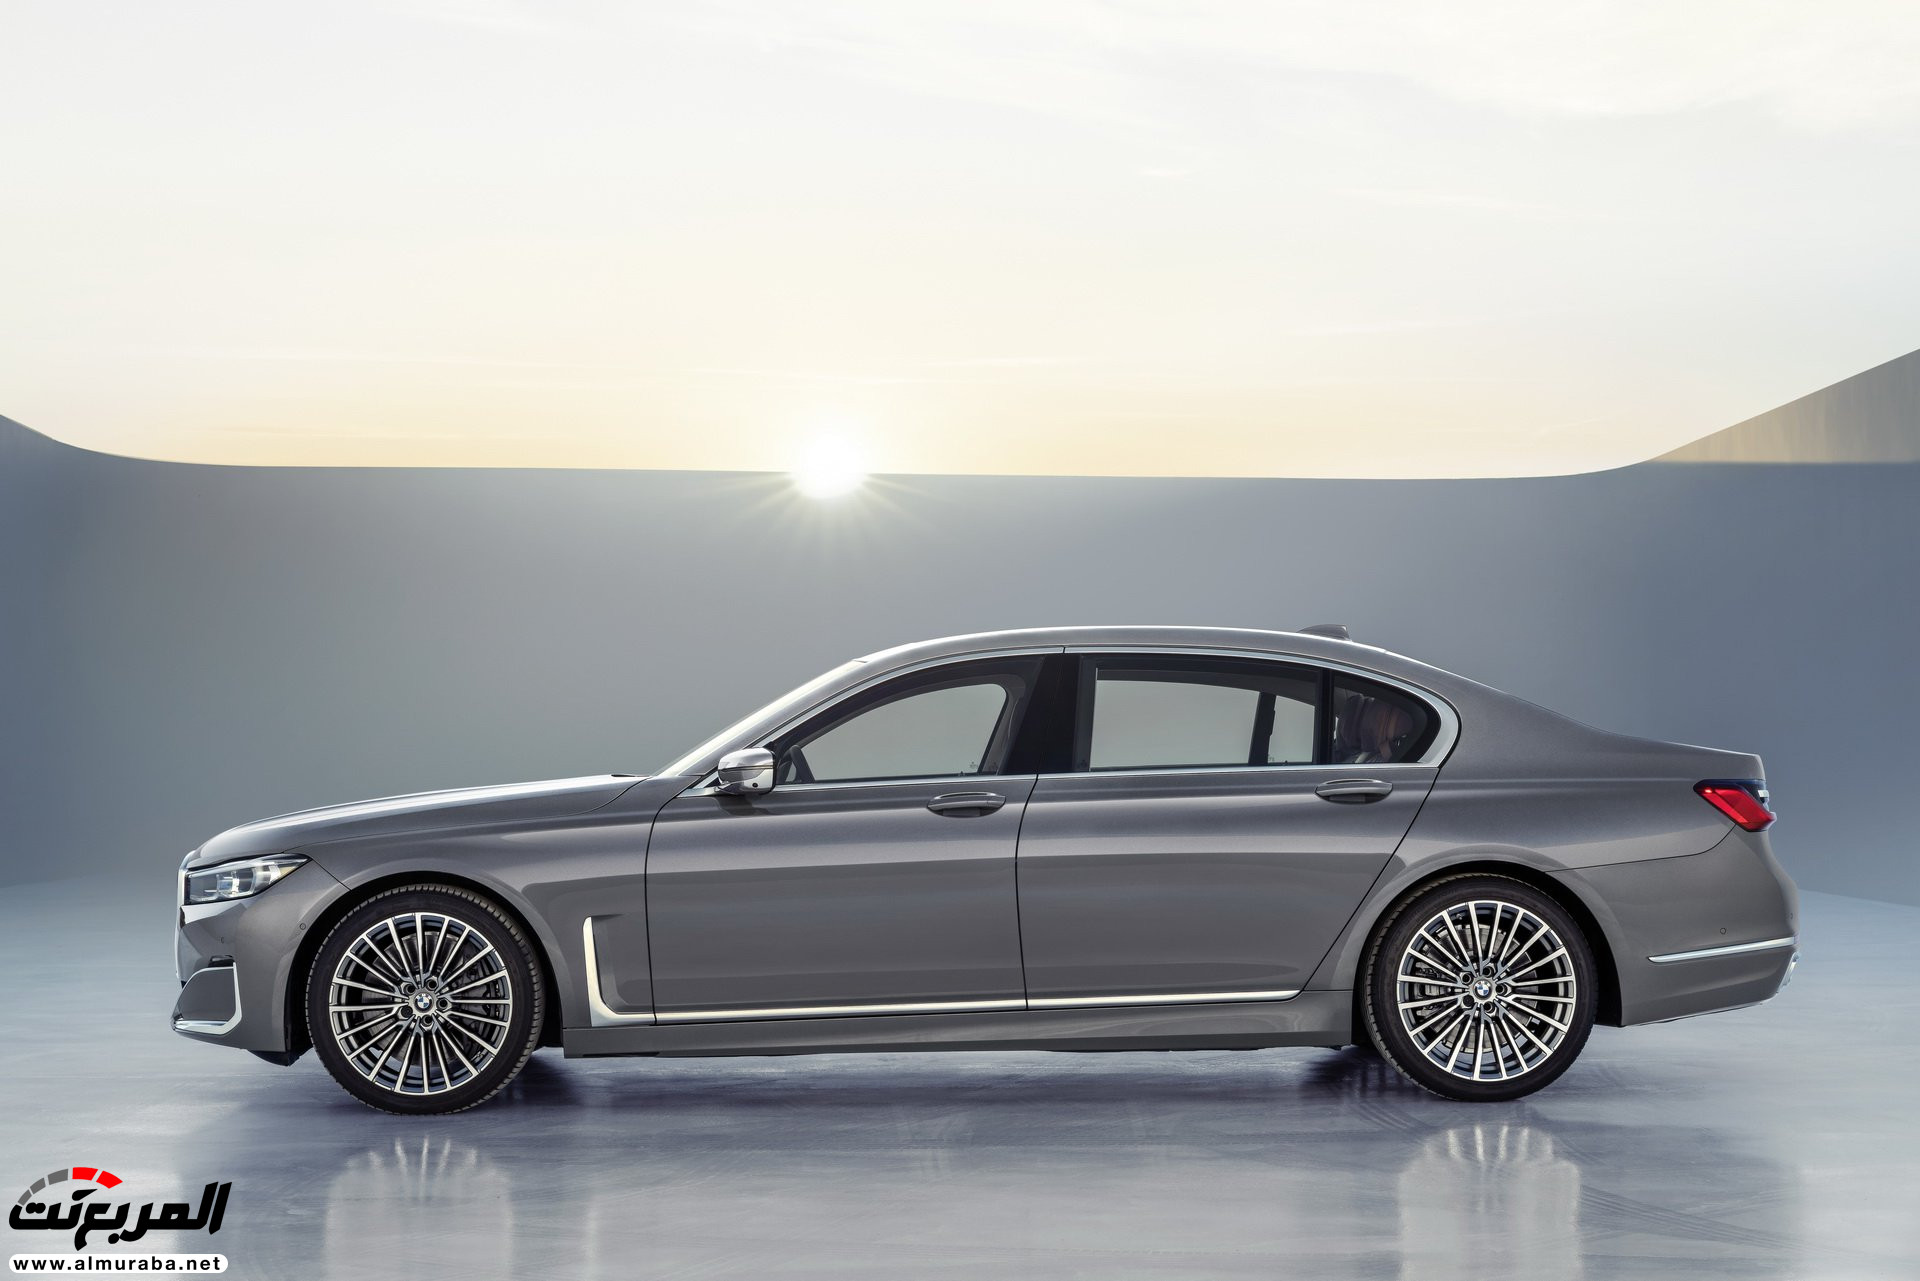 بي ام دبليو الفئة السابعة 2020 المحدثة تكشف نفسها رسمياً "صور ومواصفات" BMW 7 Series 220